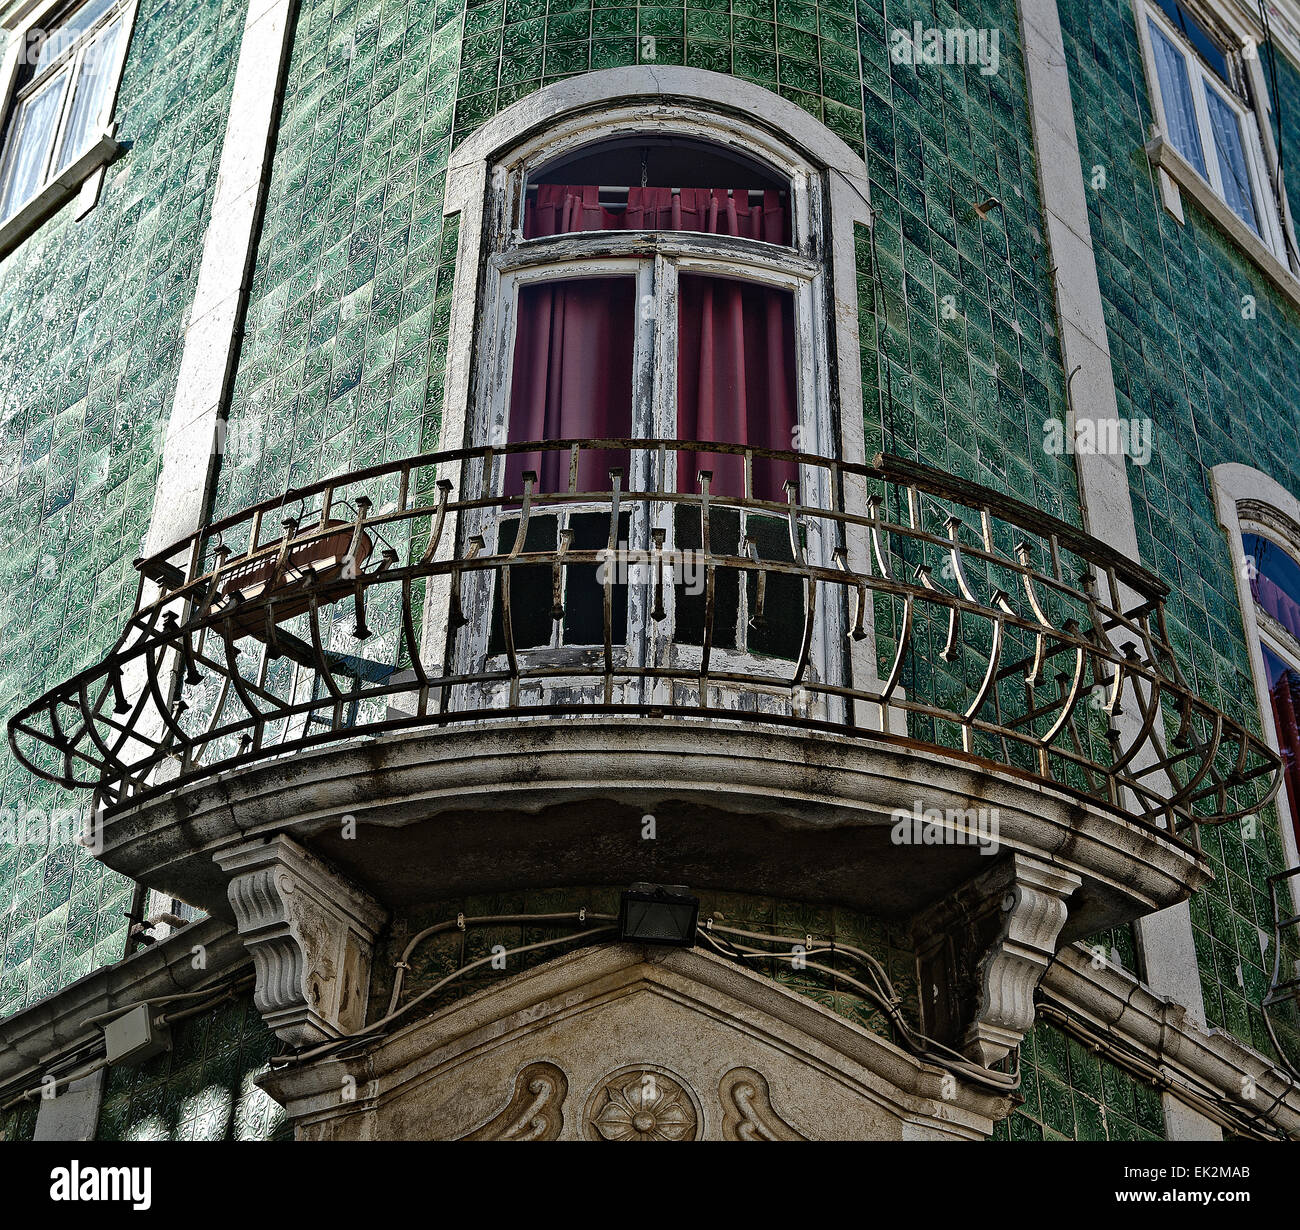 Vieux balcon avec tuiles vernissées vert, Lagos, Portugal Banque D'Images